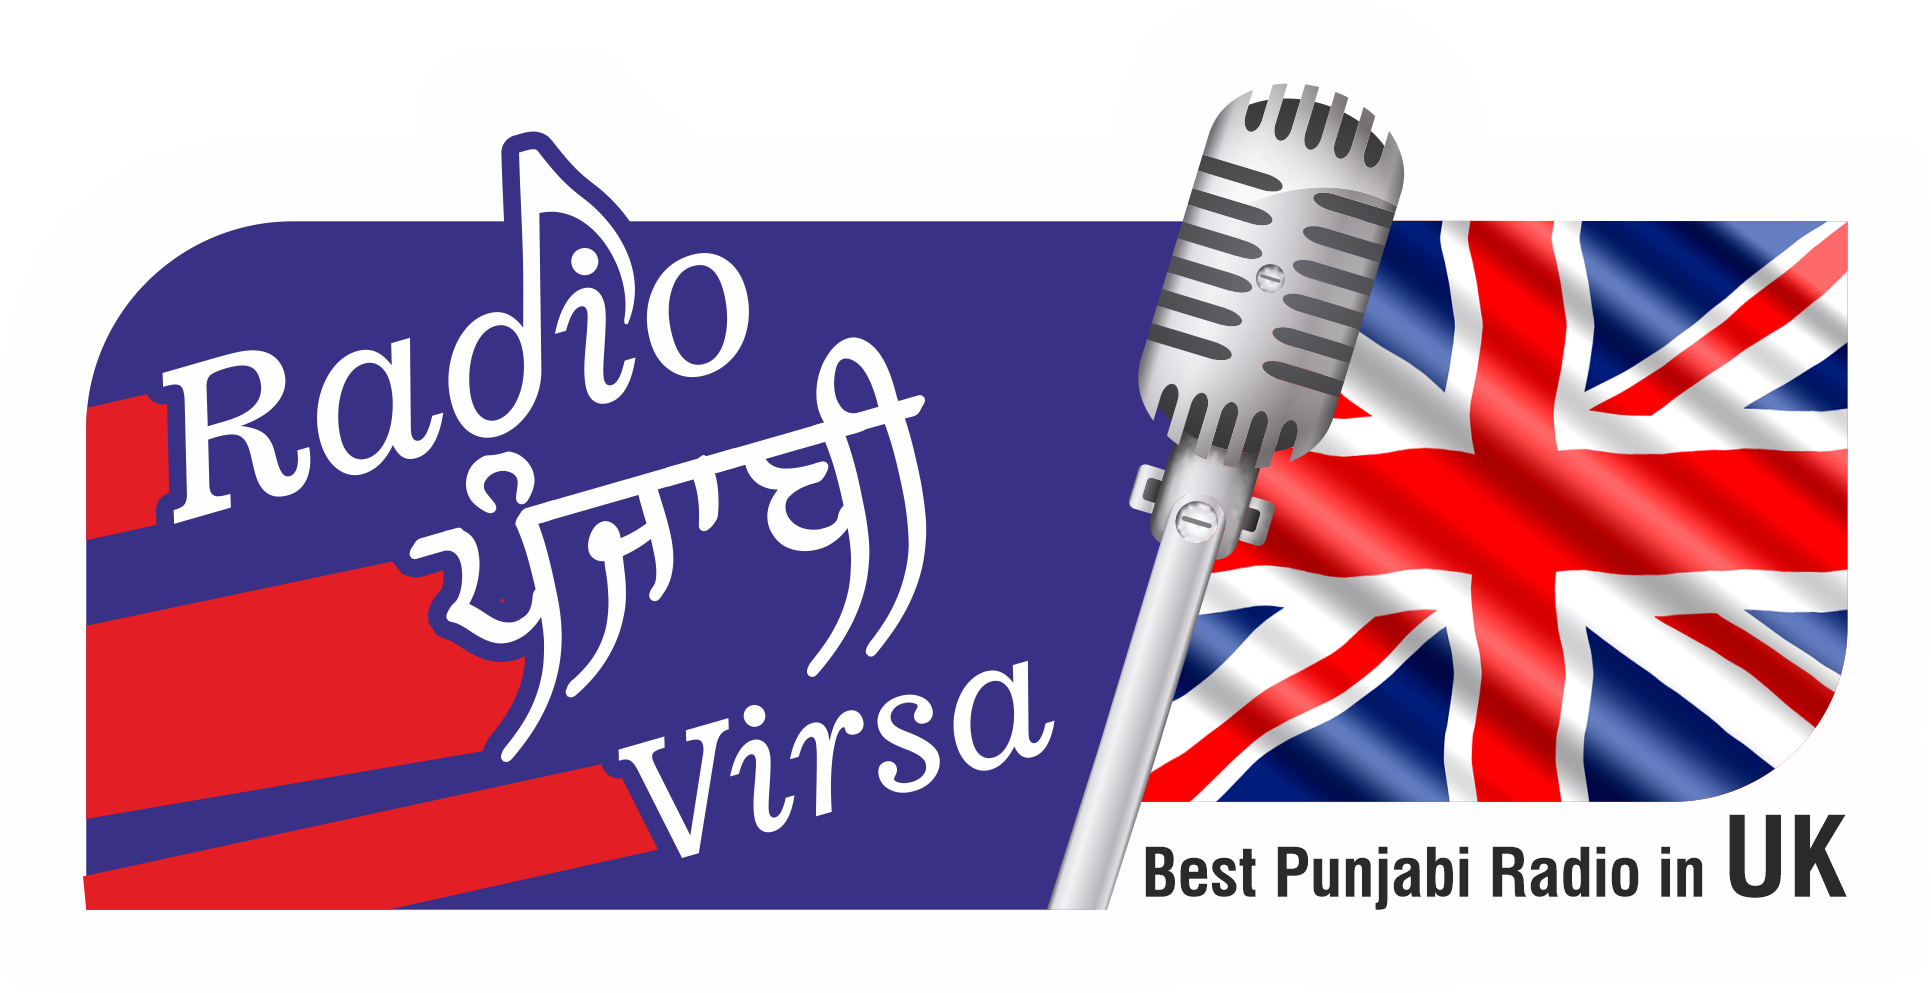 Radio Punjabi Virsa – Best Punjabi Radio in UK